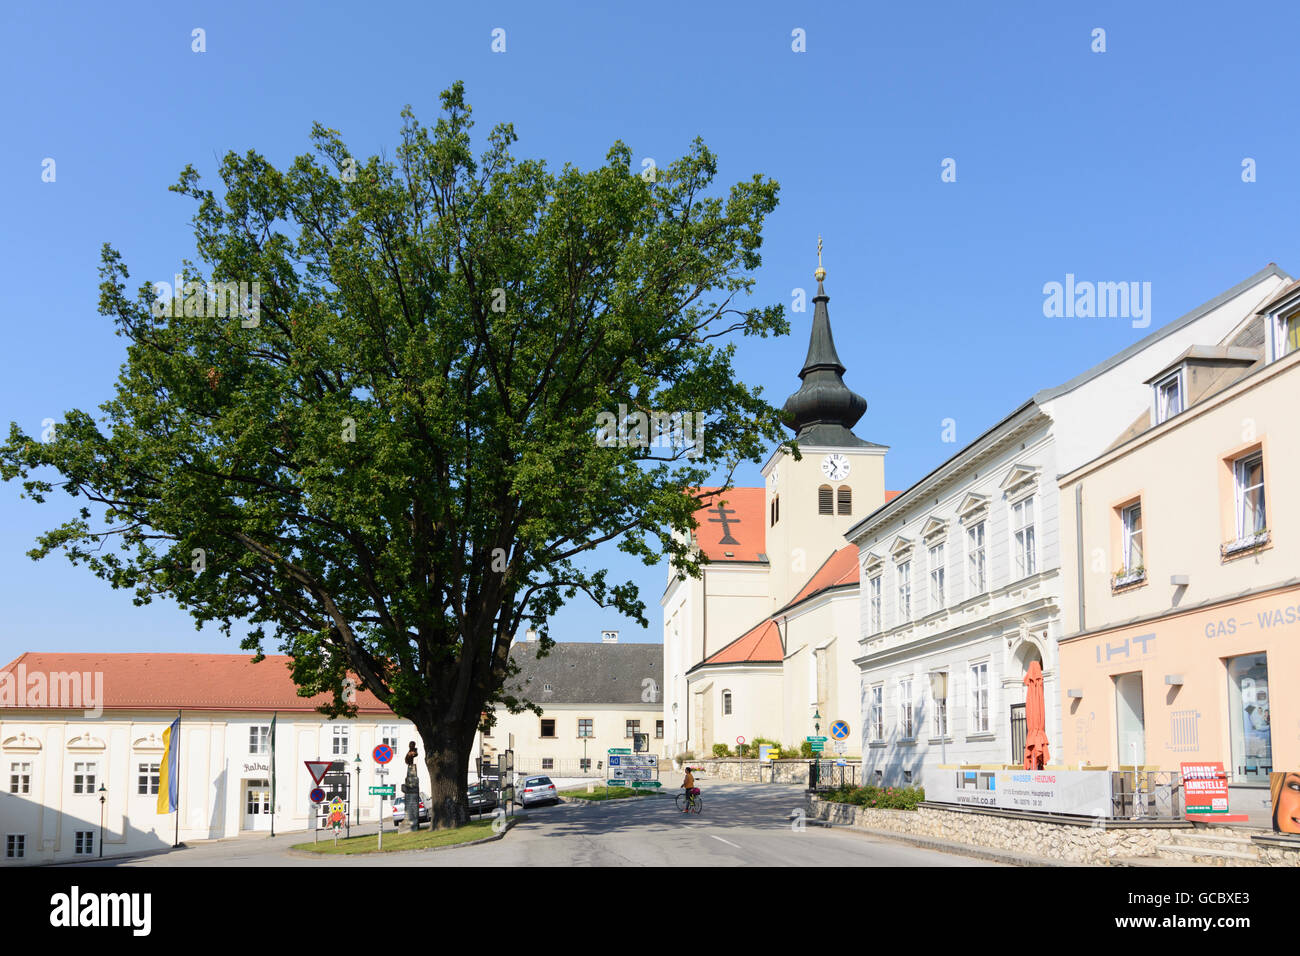 Ernstbrunn market square, church, town hall Austria Niederösterreich, Lower Austria Weinviertel Stock Photo